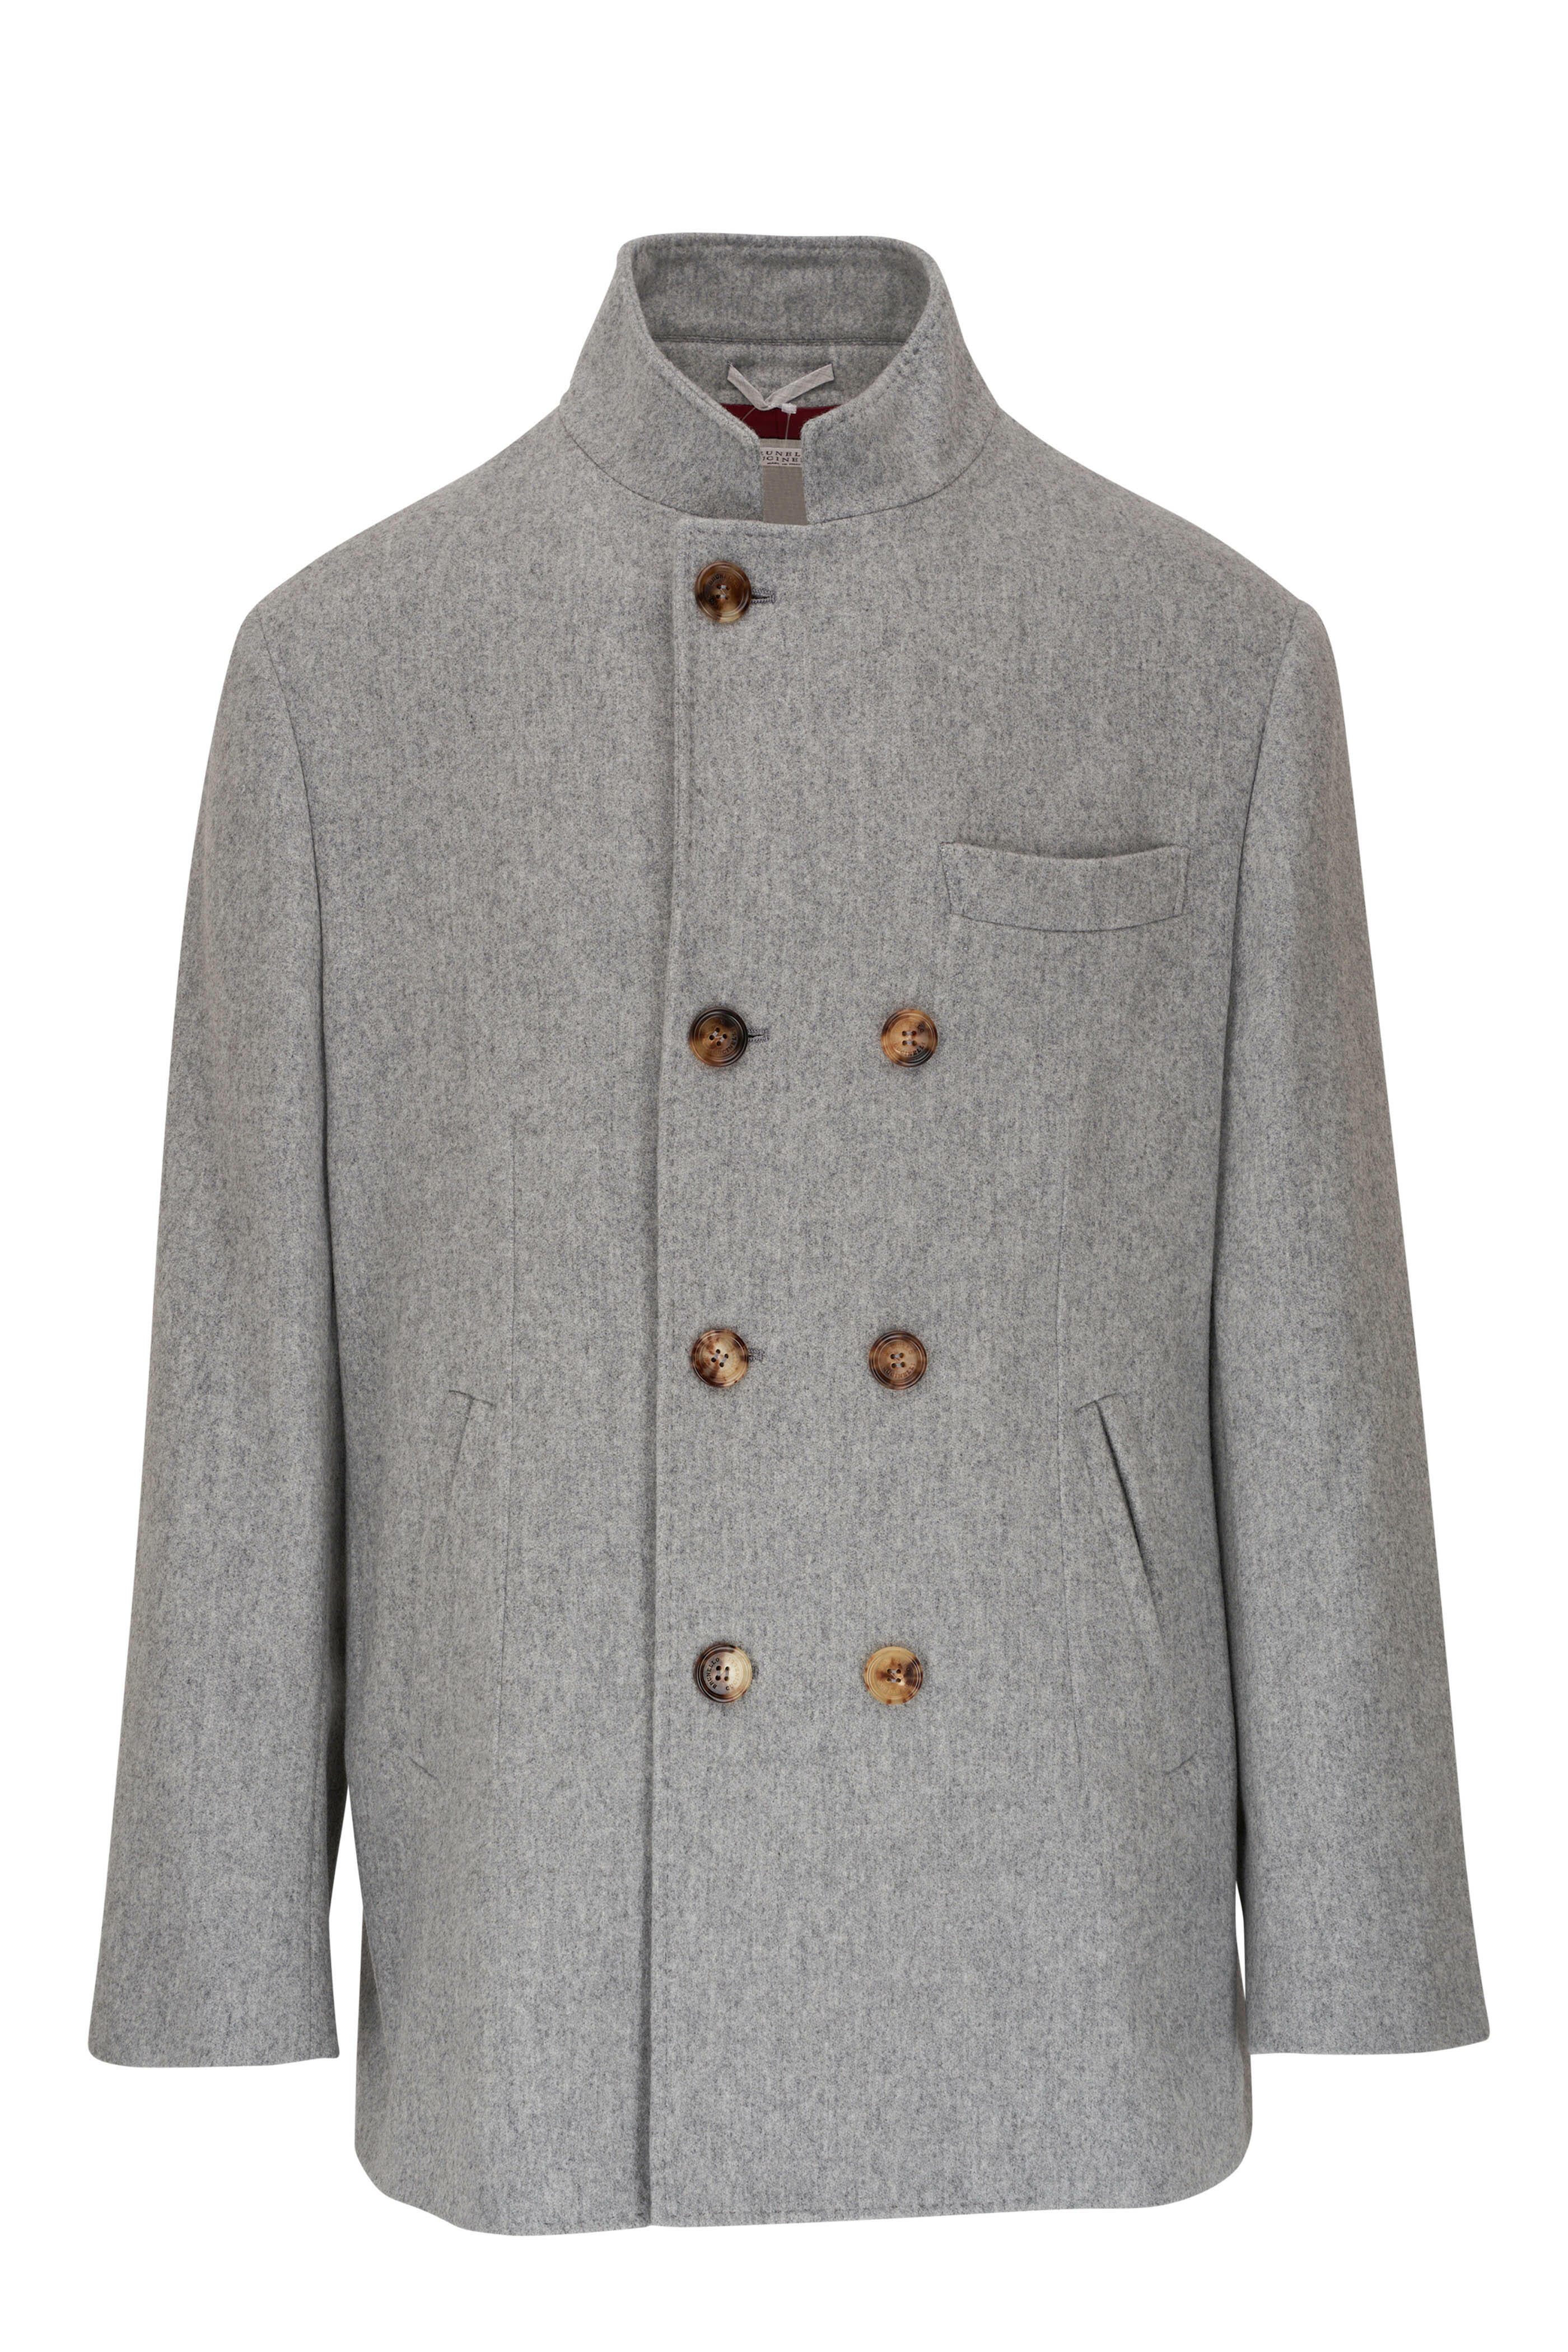 Brunello Cucinelli - Gray Cashmere Pea Coat | Mitchell Stores